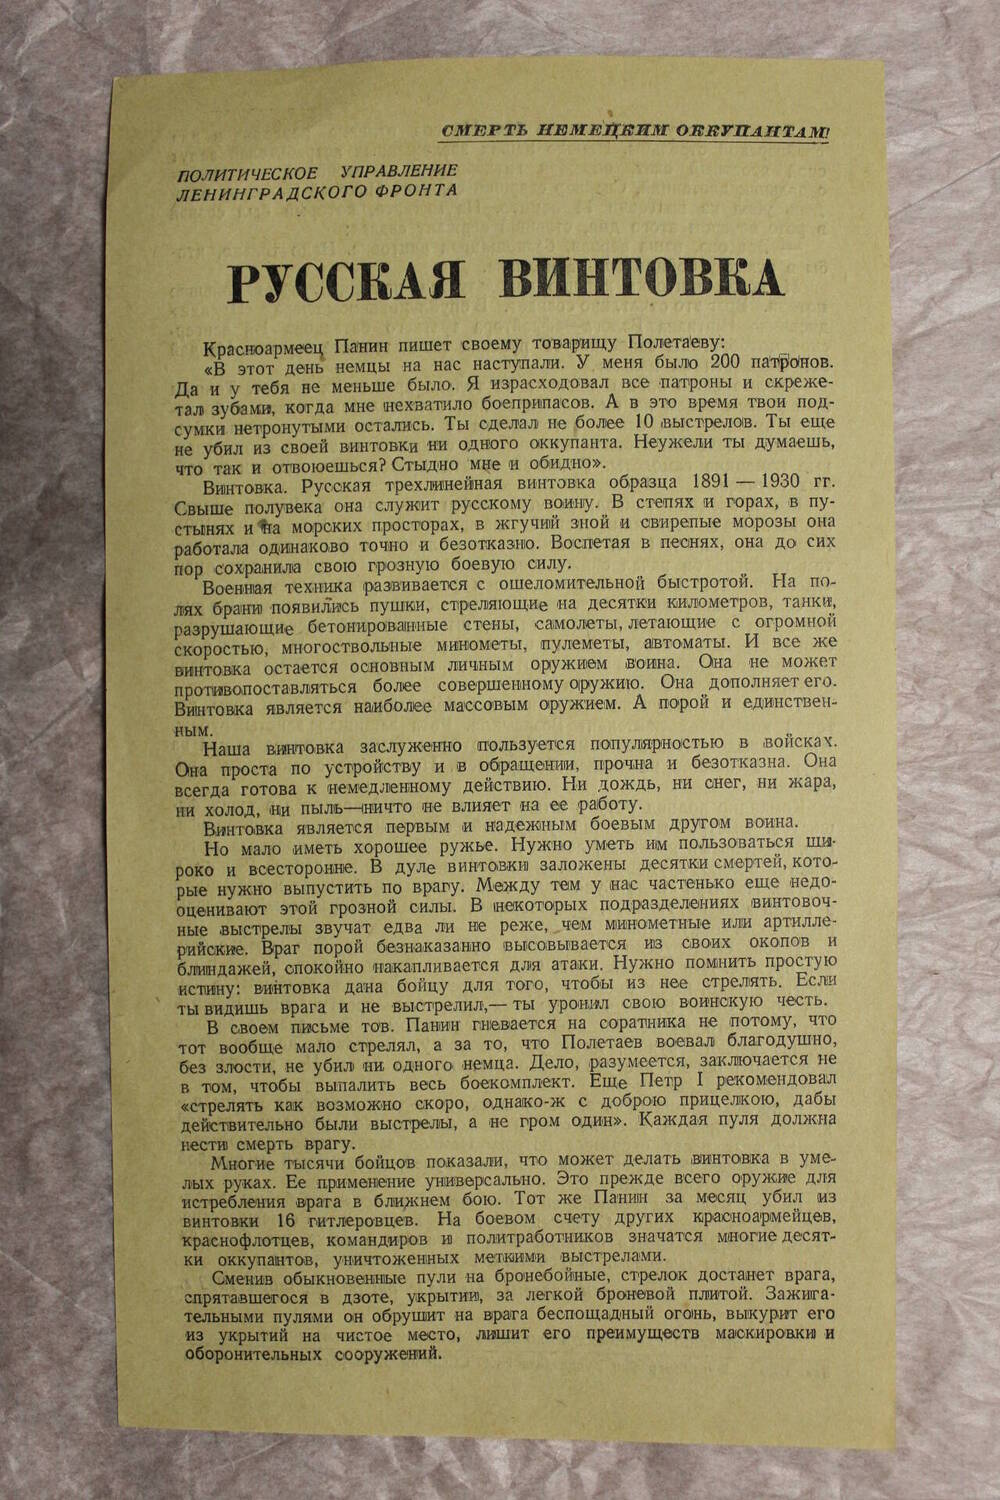 Листовка  «Русская винтовка» (Передовая газеты «Правда», 30 сентября 1942 года).